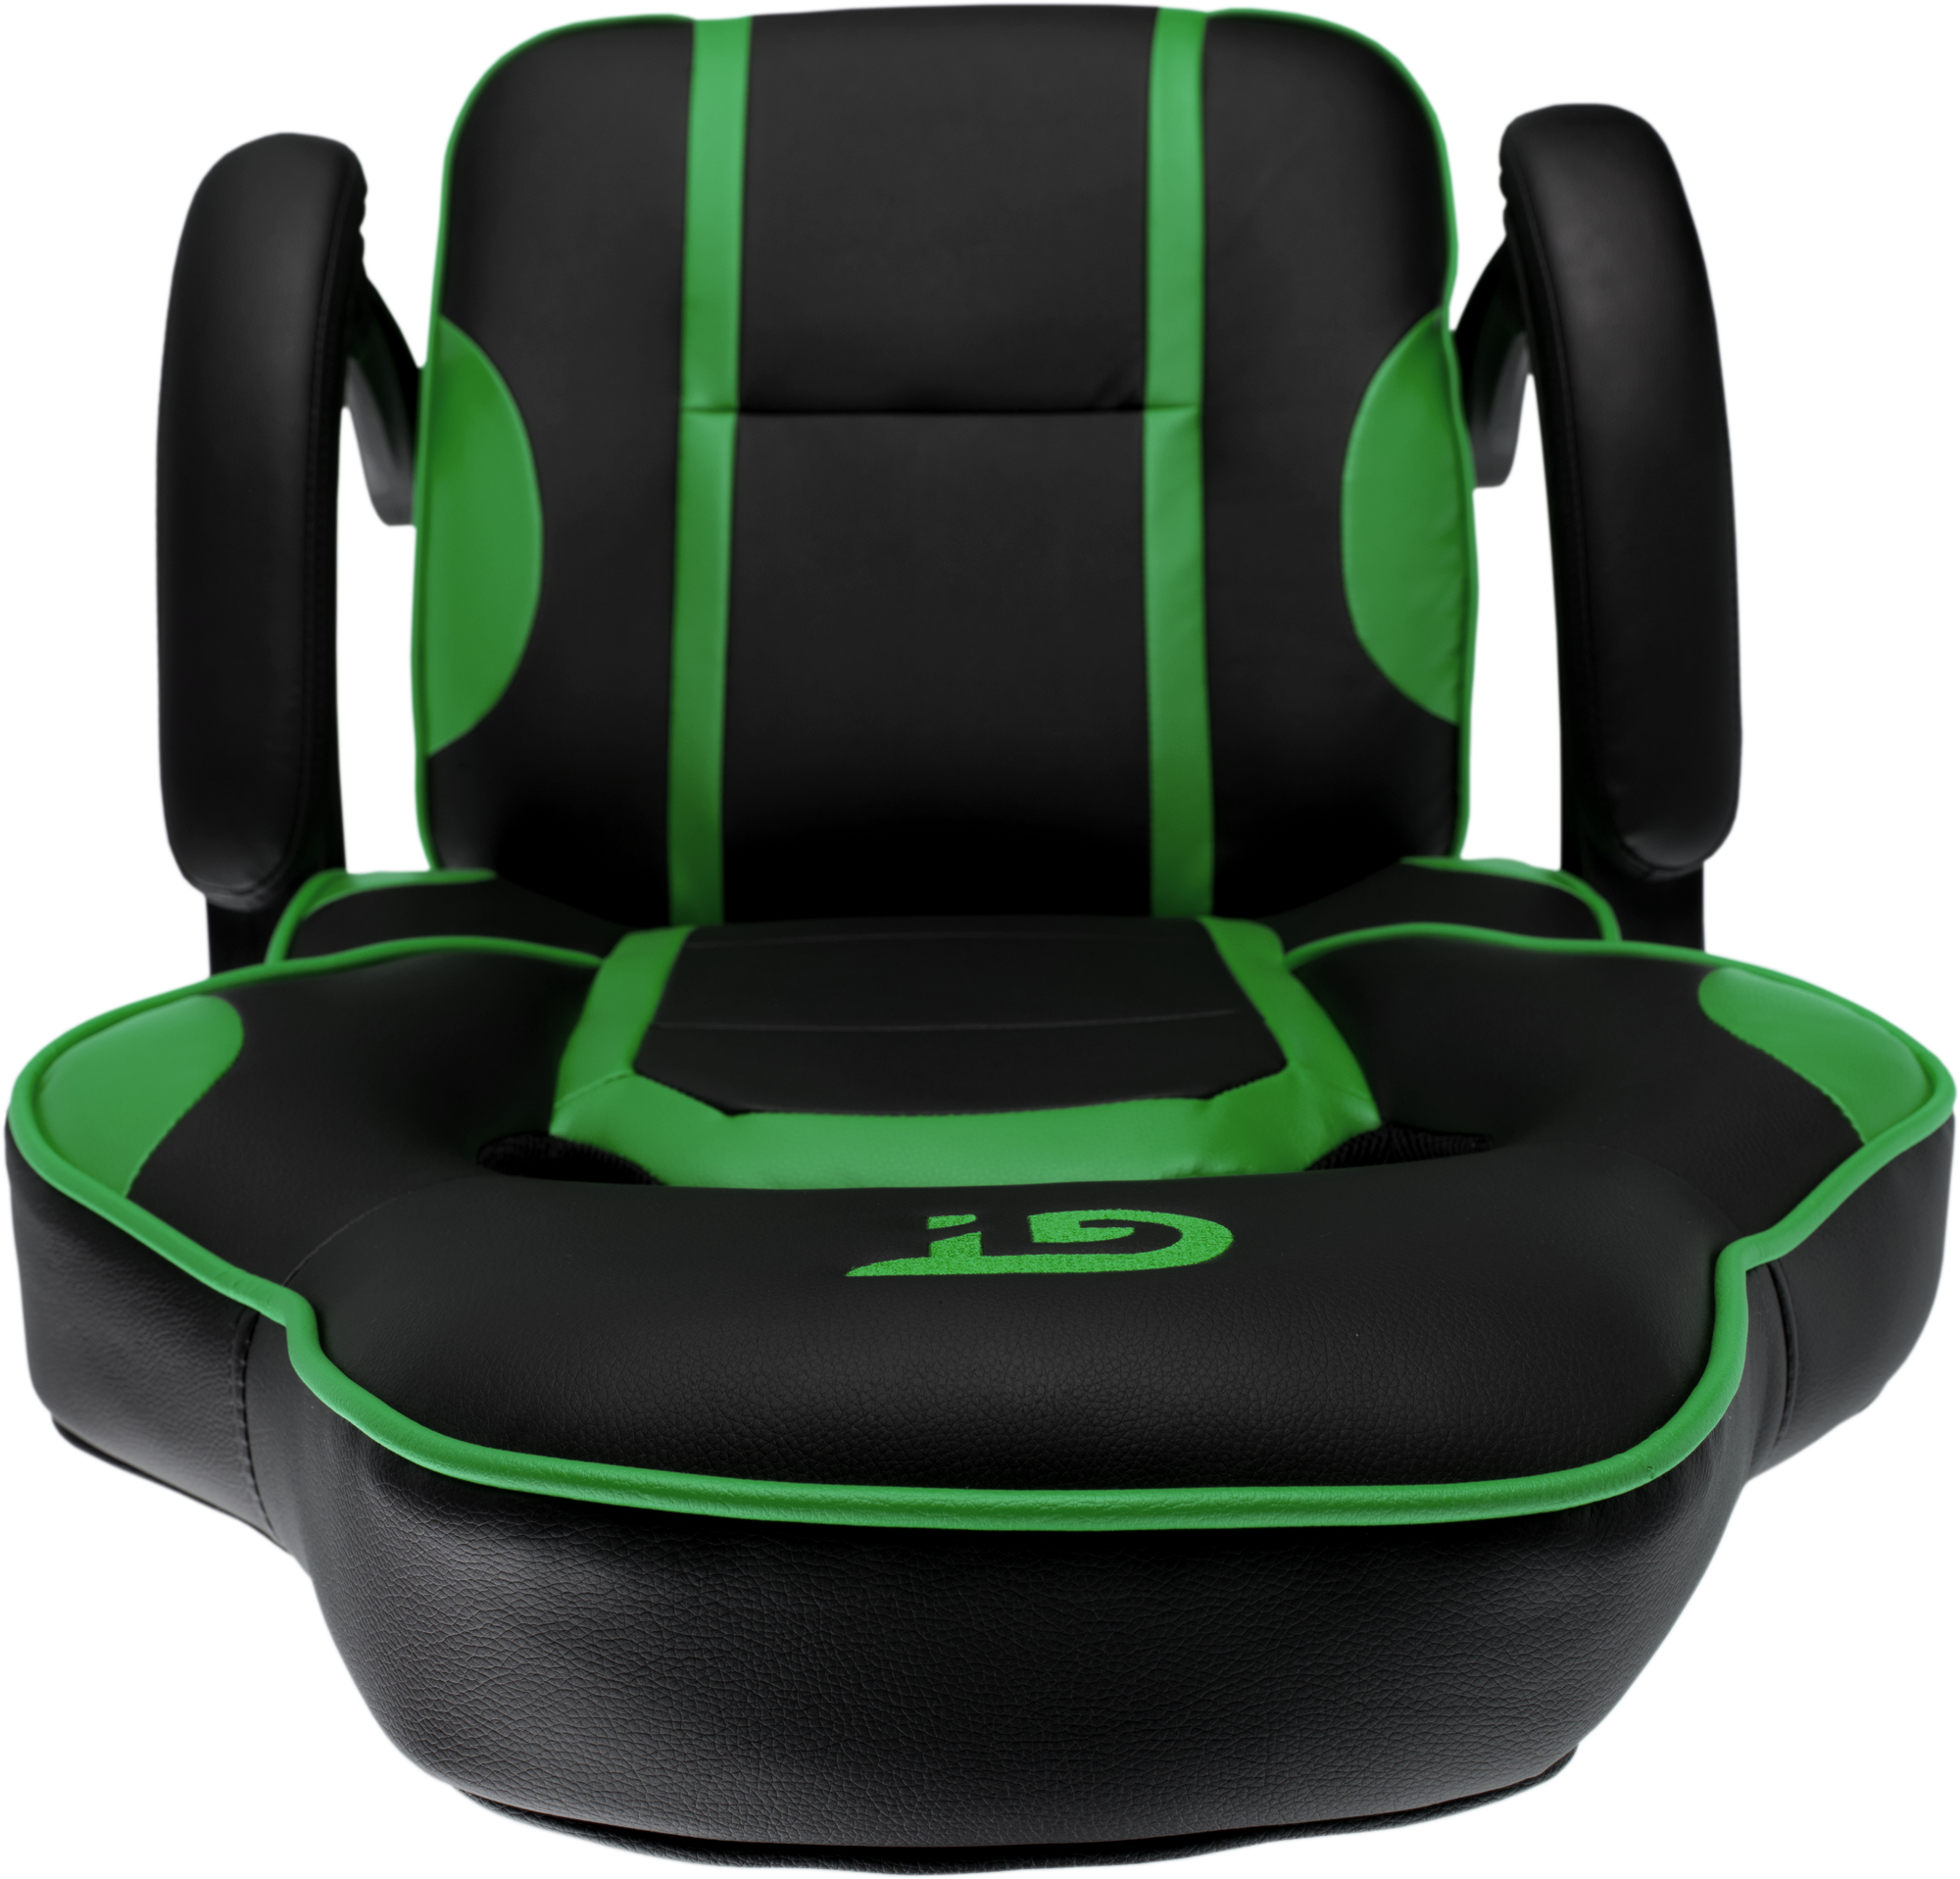 Геймерское кресло GT Racer черное с зеленым (X-2749-1 Black/Green) - фото 14